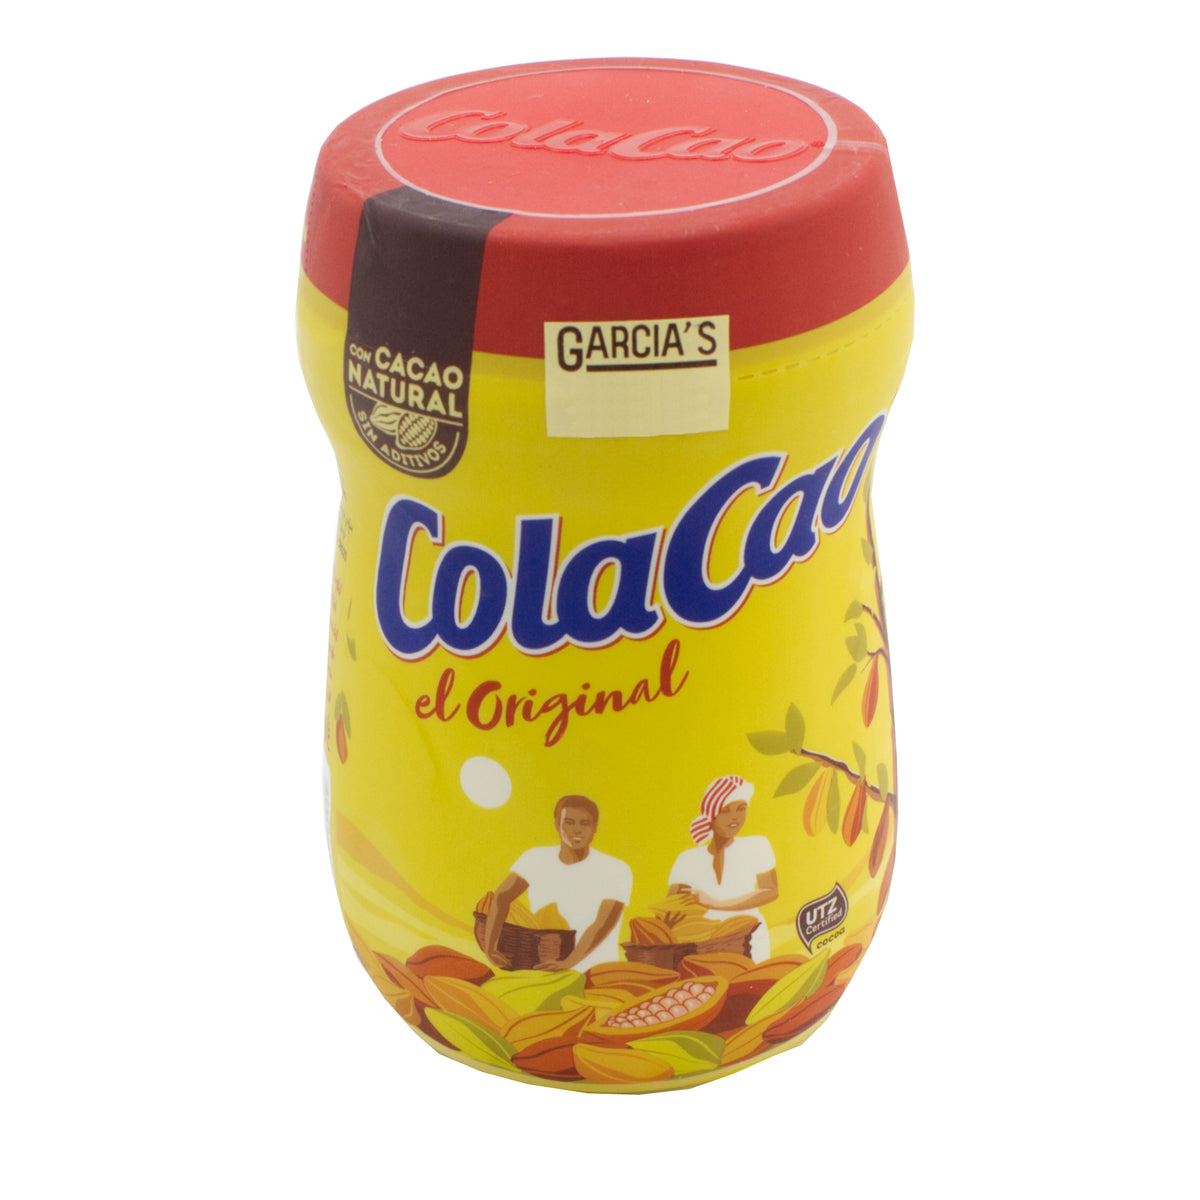 ColaCao Original 760g